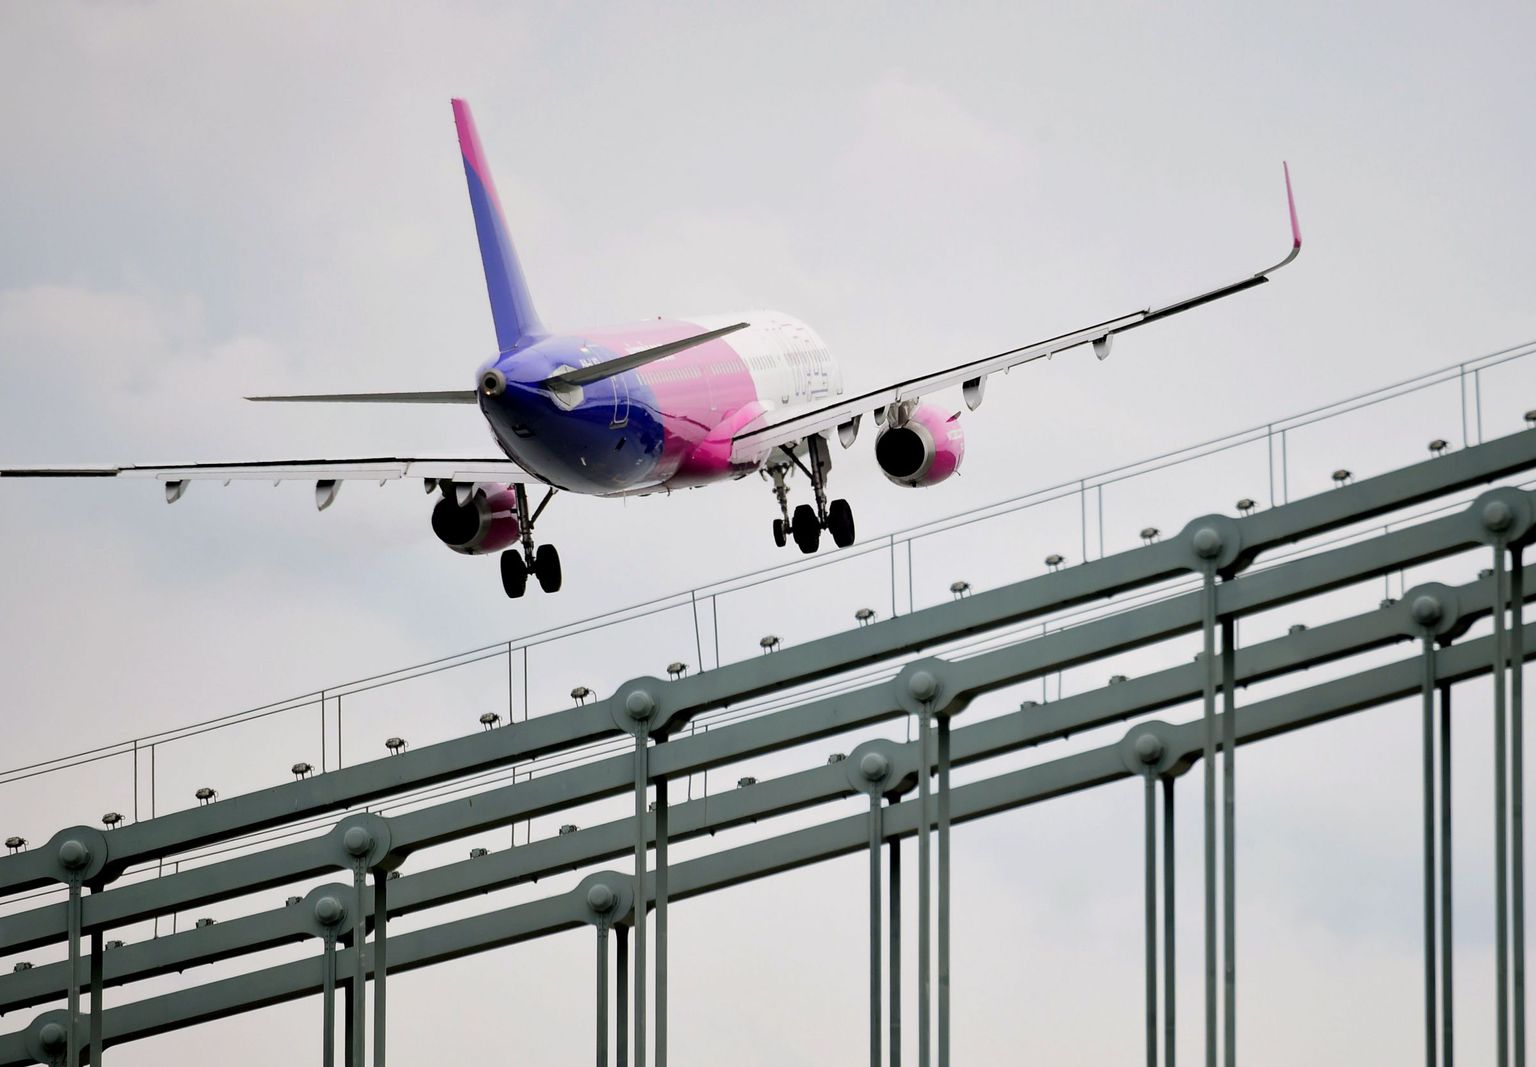 Wizz Airi lennuk tõusmas õhku Budapesti lennuväljalt Ungaris.